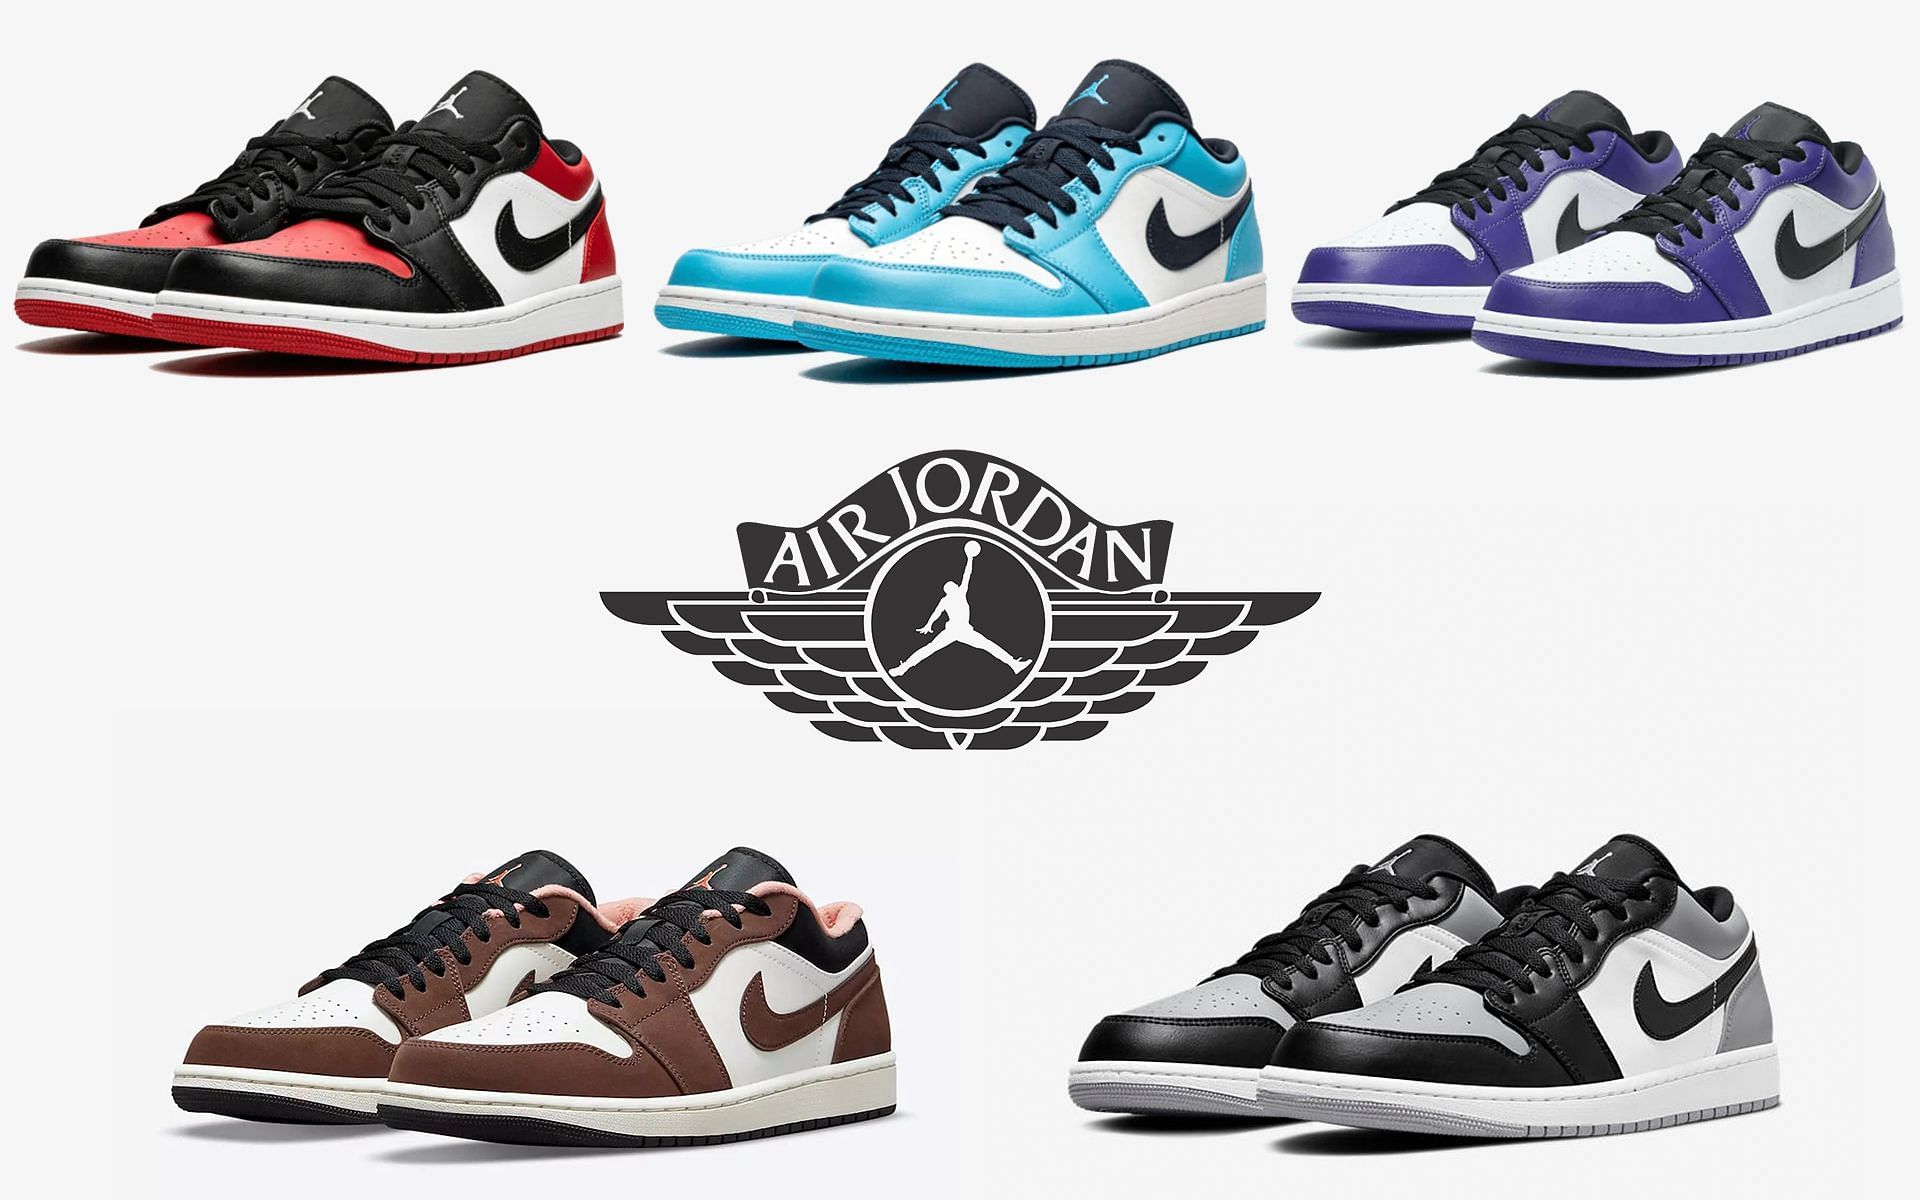 5 best Nike Air Jordan 1 Low colorways 